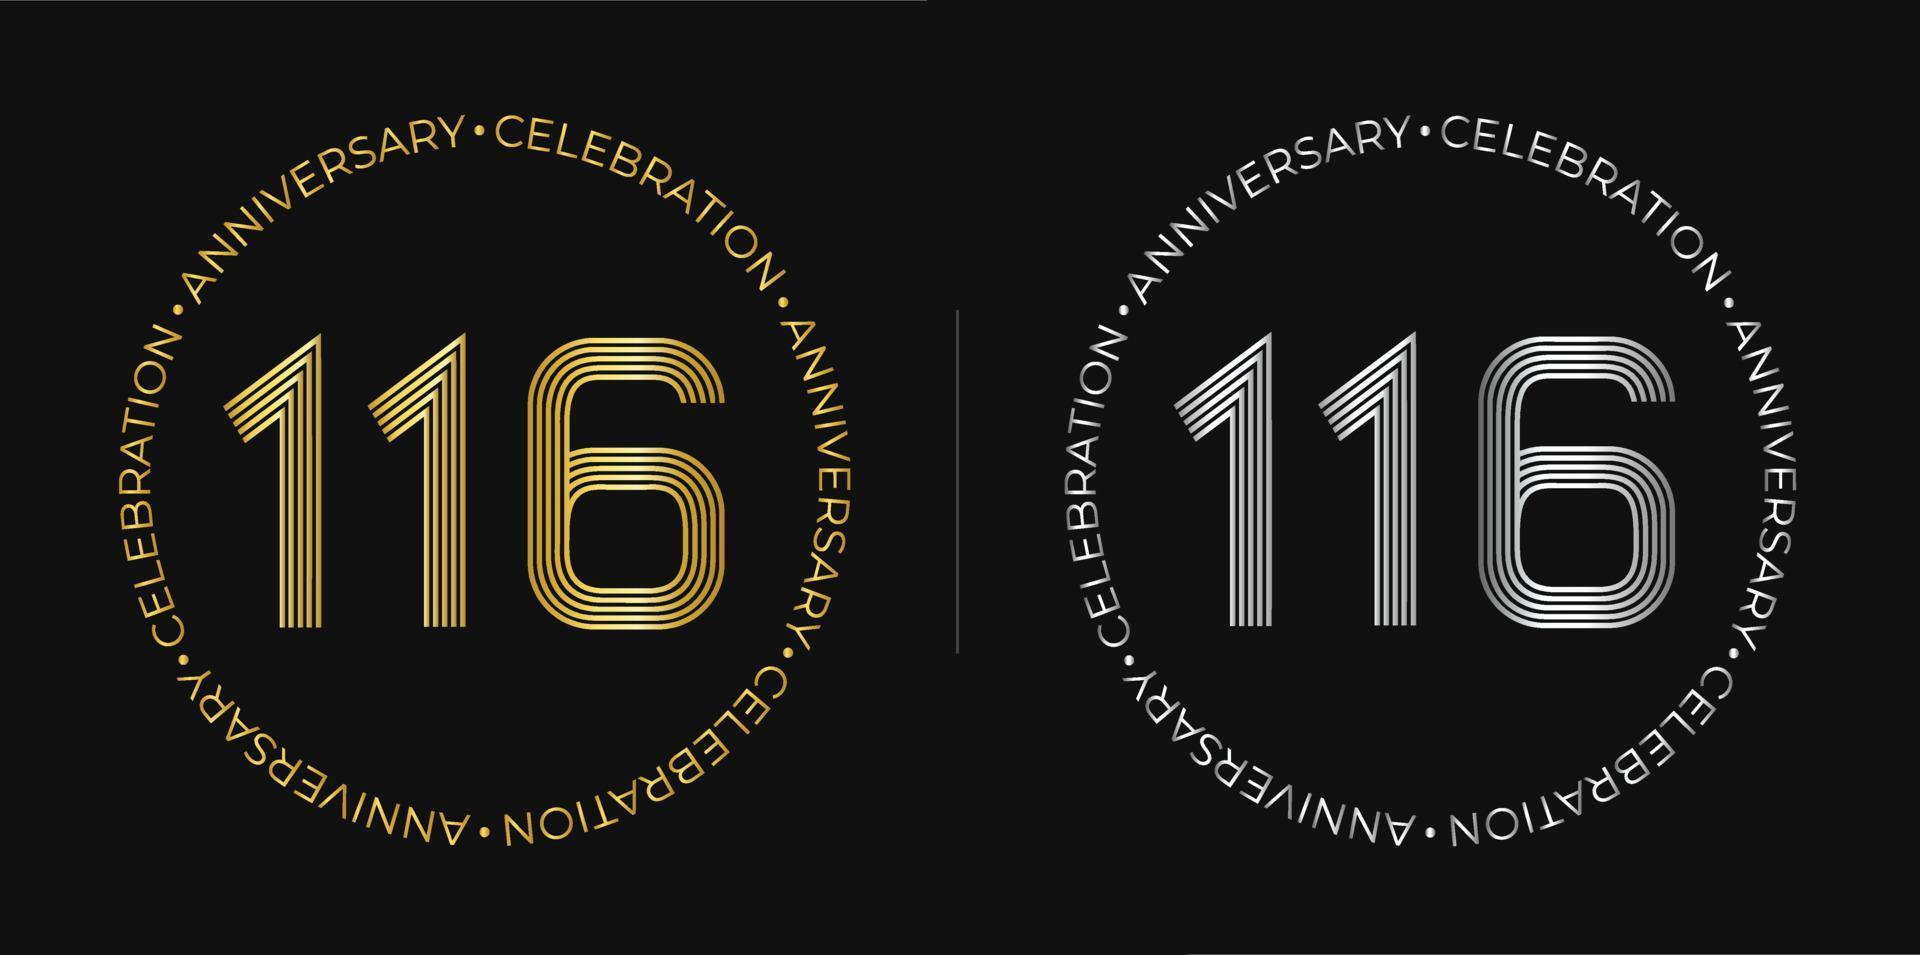 116e anniversaire. bannière de célébration d'anniversaire de cent seize ans aux couleurs dorées et argentées. logo circulaire avec un design original de chiffres aux lignes élégantes. vecteur